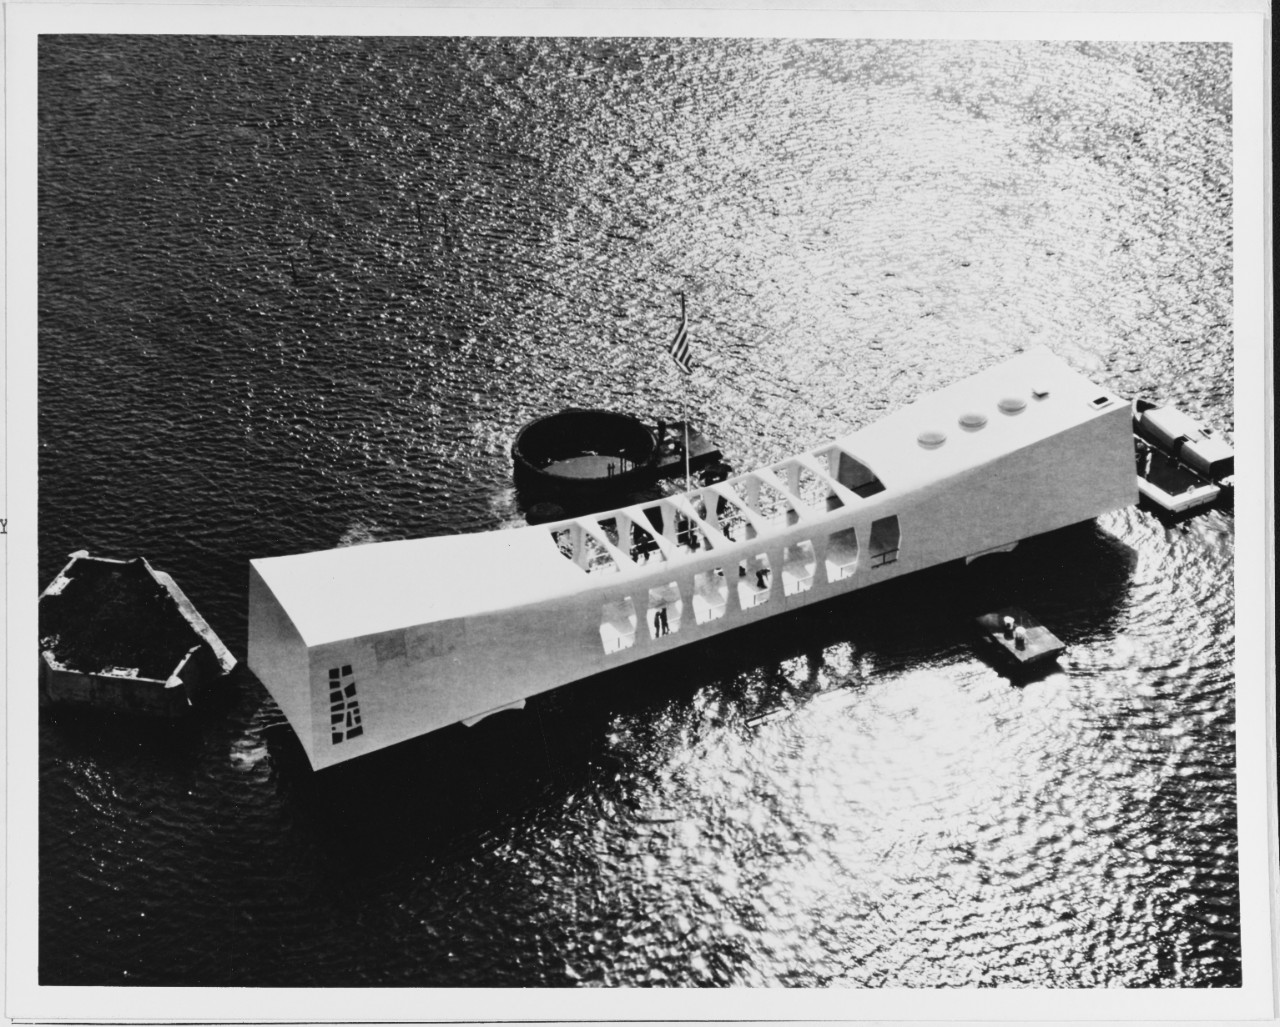 USS ARIZONA Memorial, at Pearl Harbor, Hawaii. September 1963